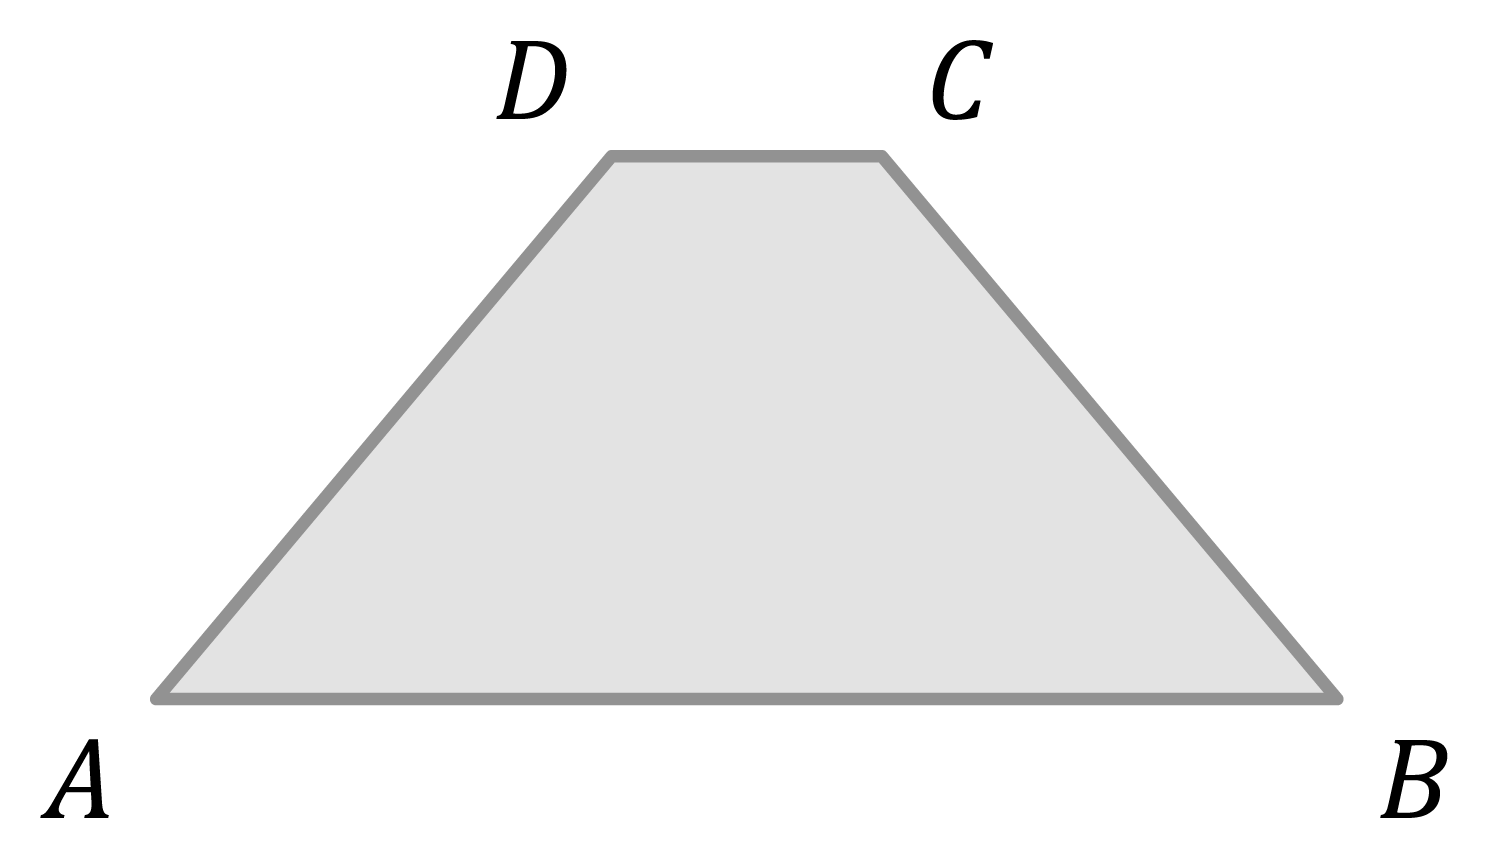 Matematica; Poligoni; 1a media; I quadrilateri e le loro proprietà